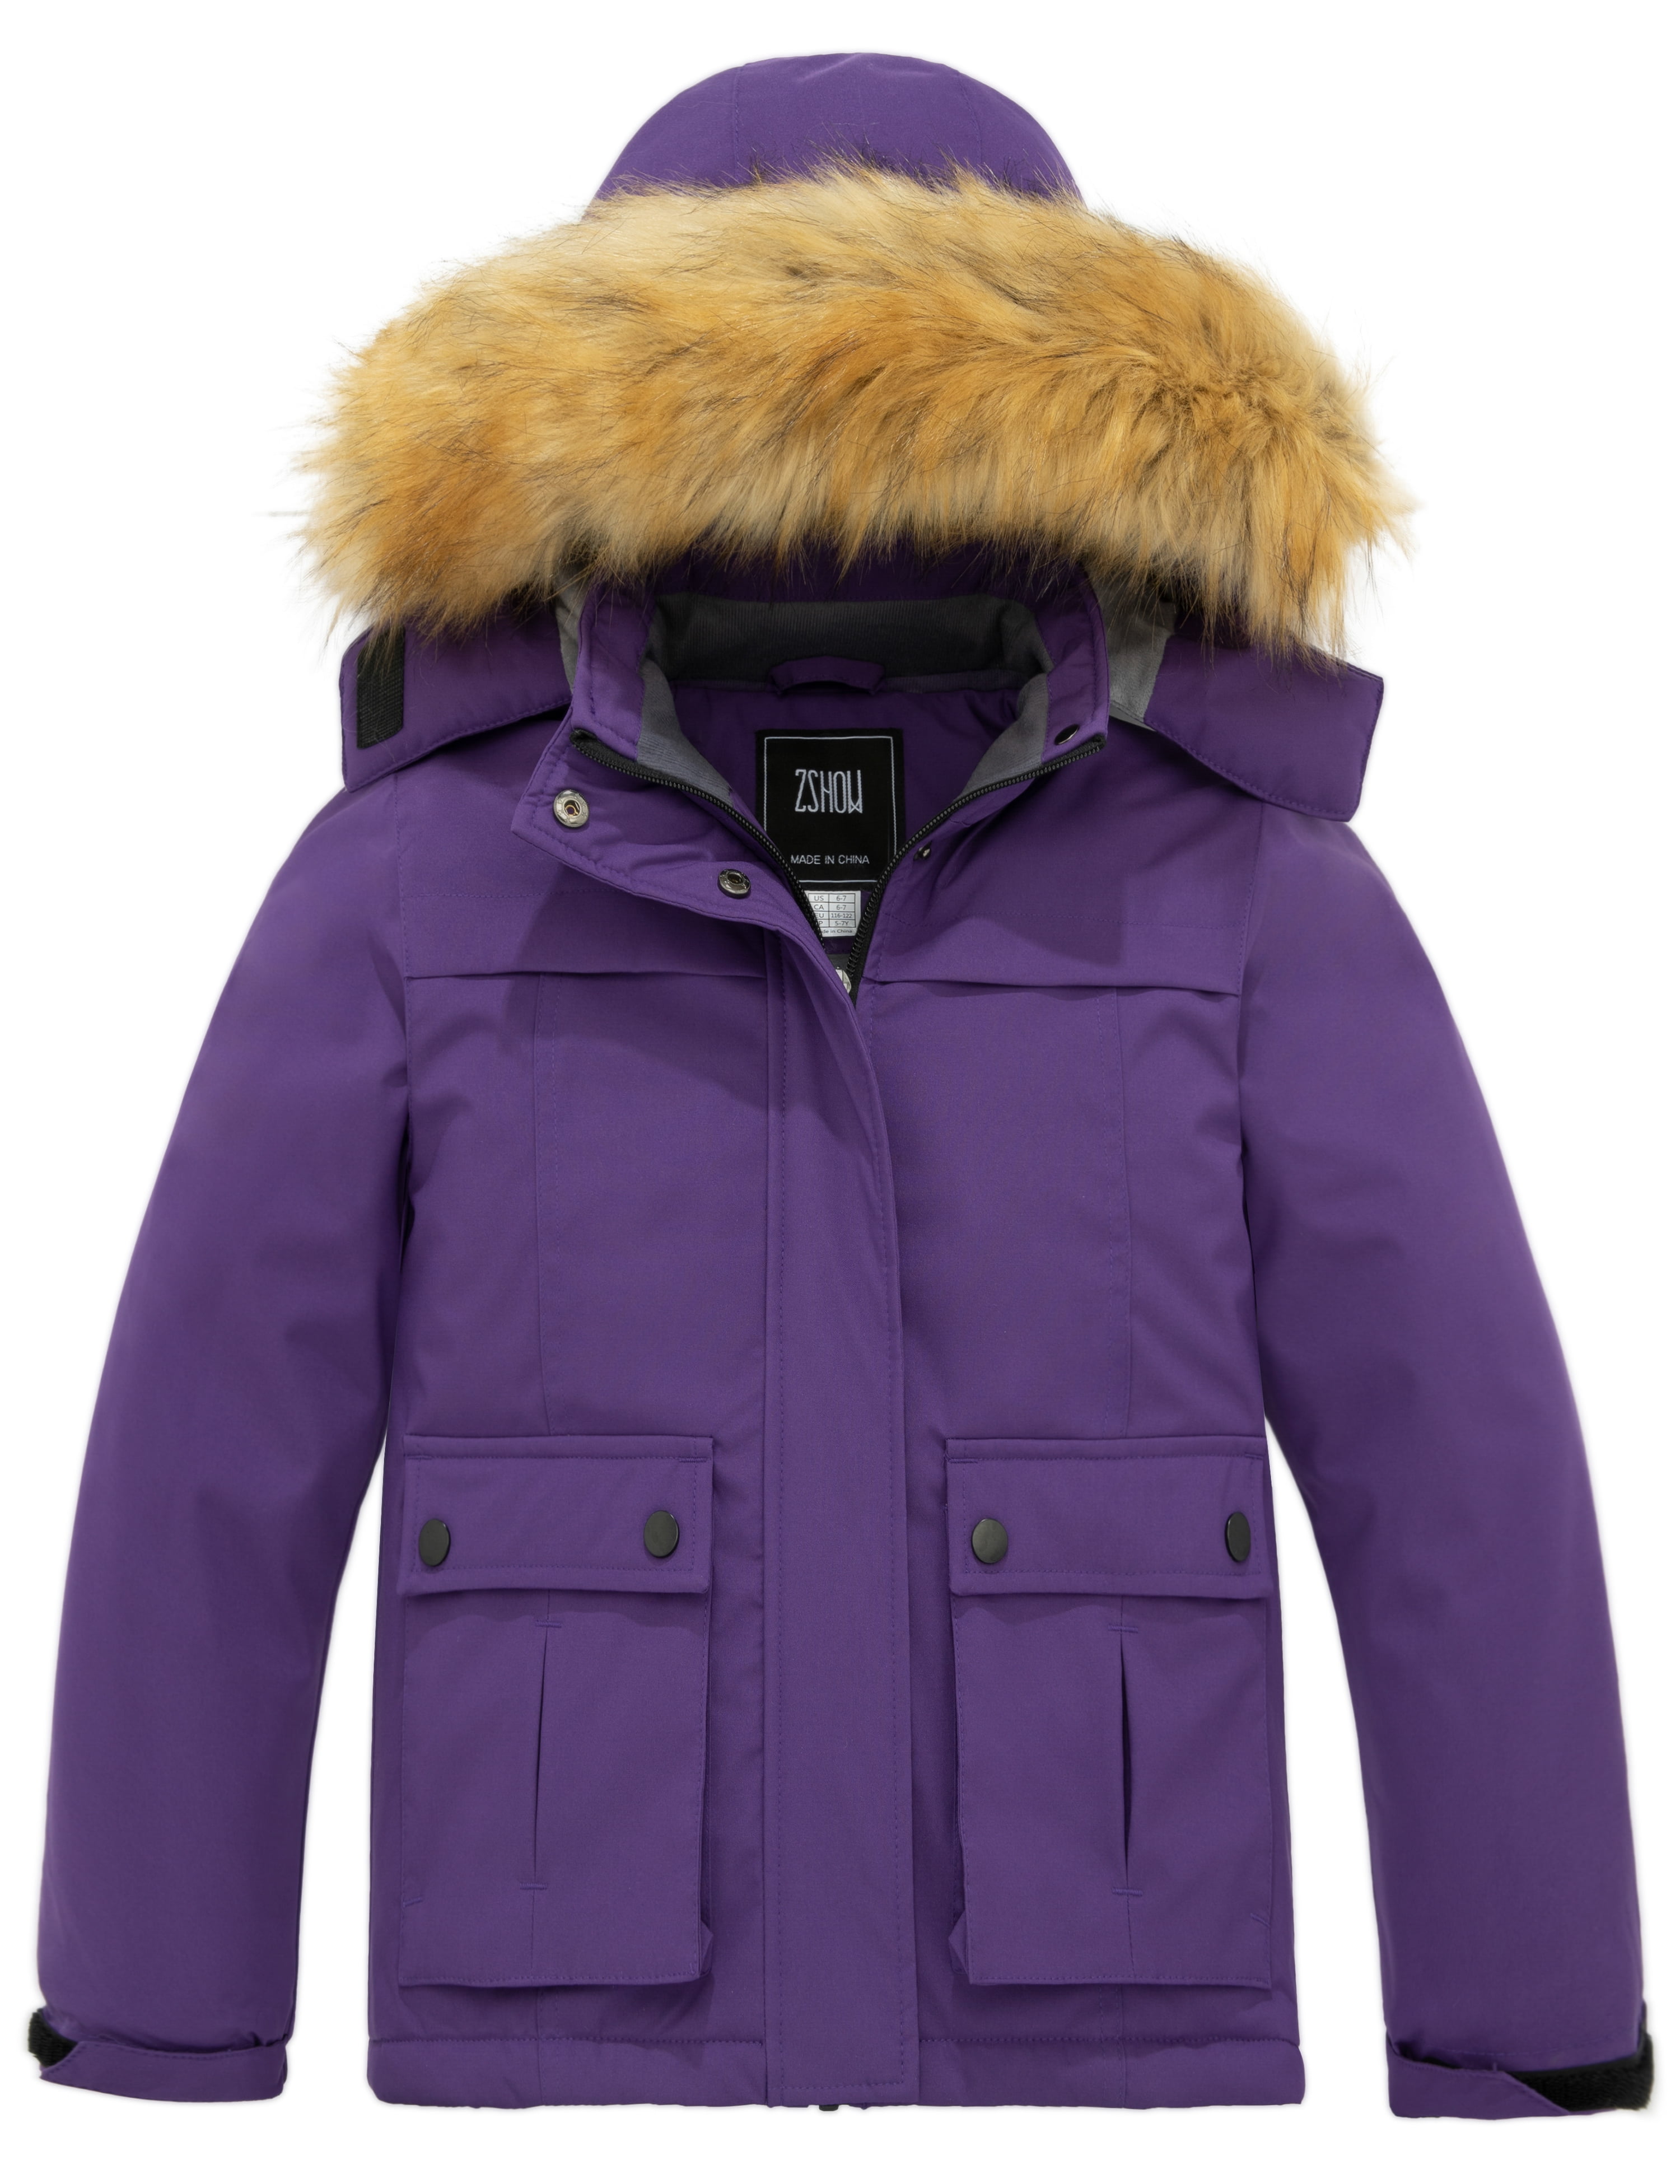 ZSHOW Girls' Waterproof Ski Jacket Thicken Quilted Warm Fleece Lined Winter Coat 